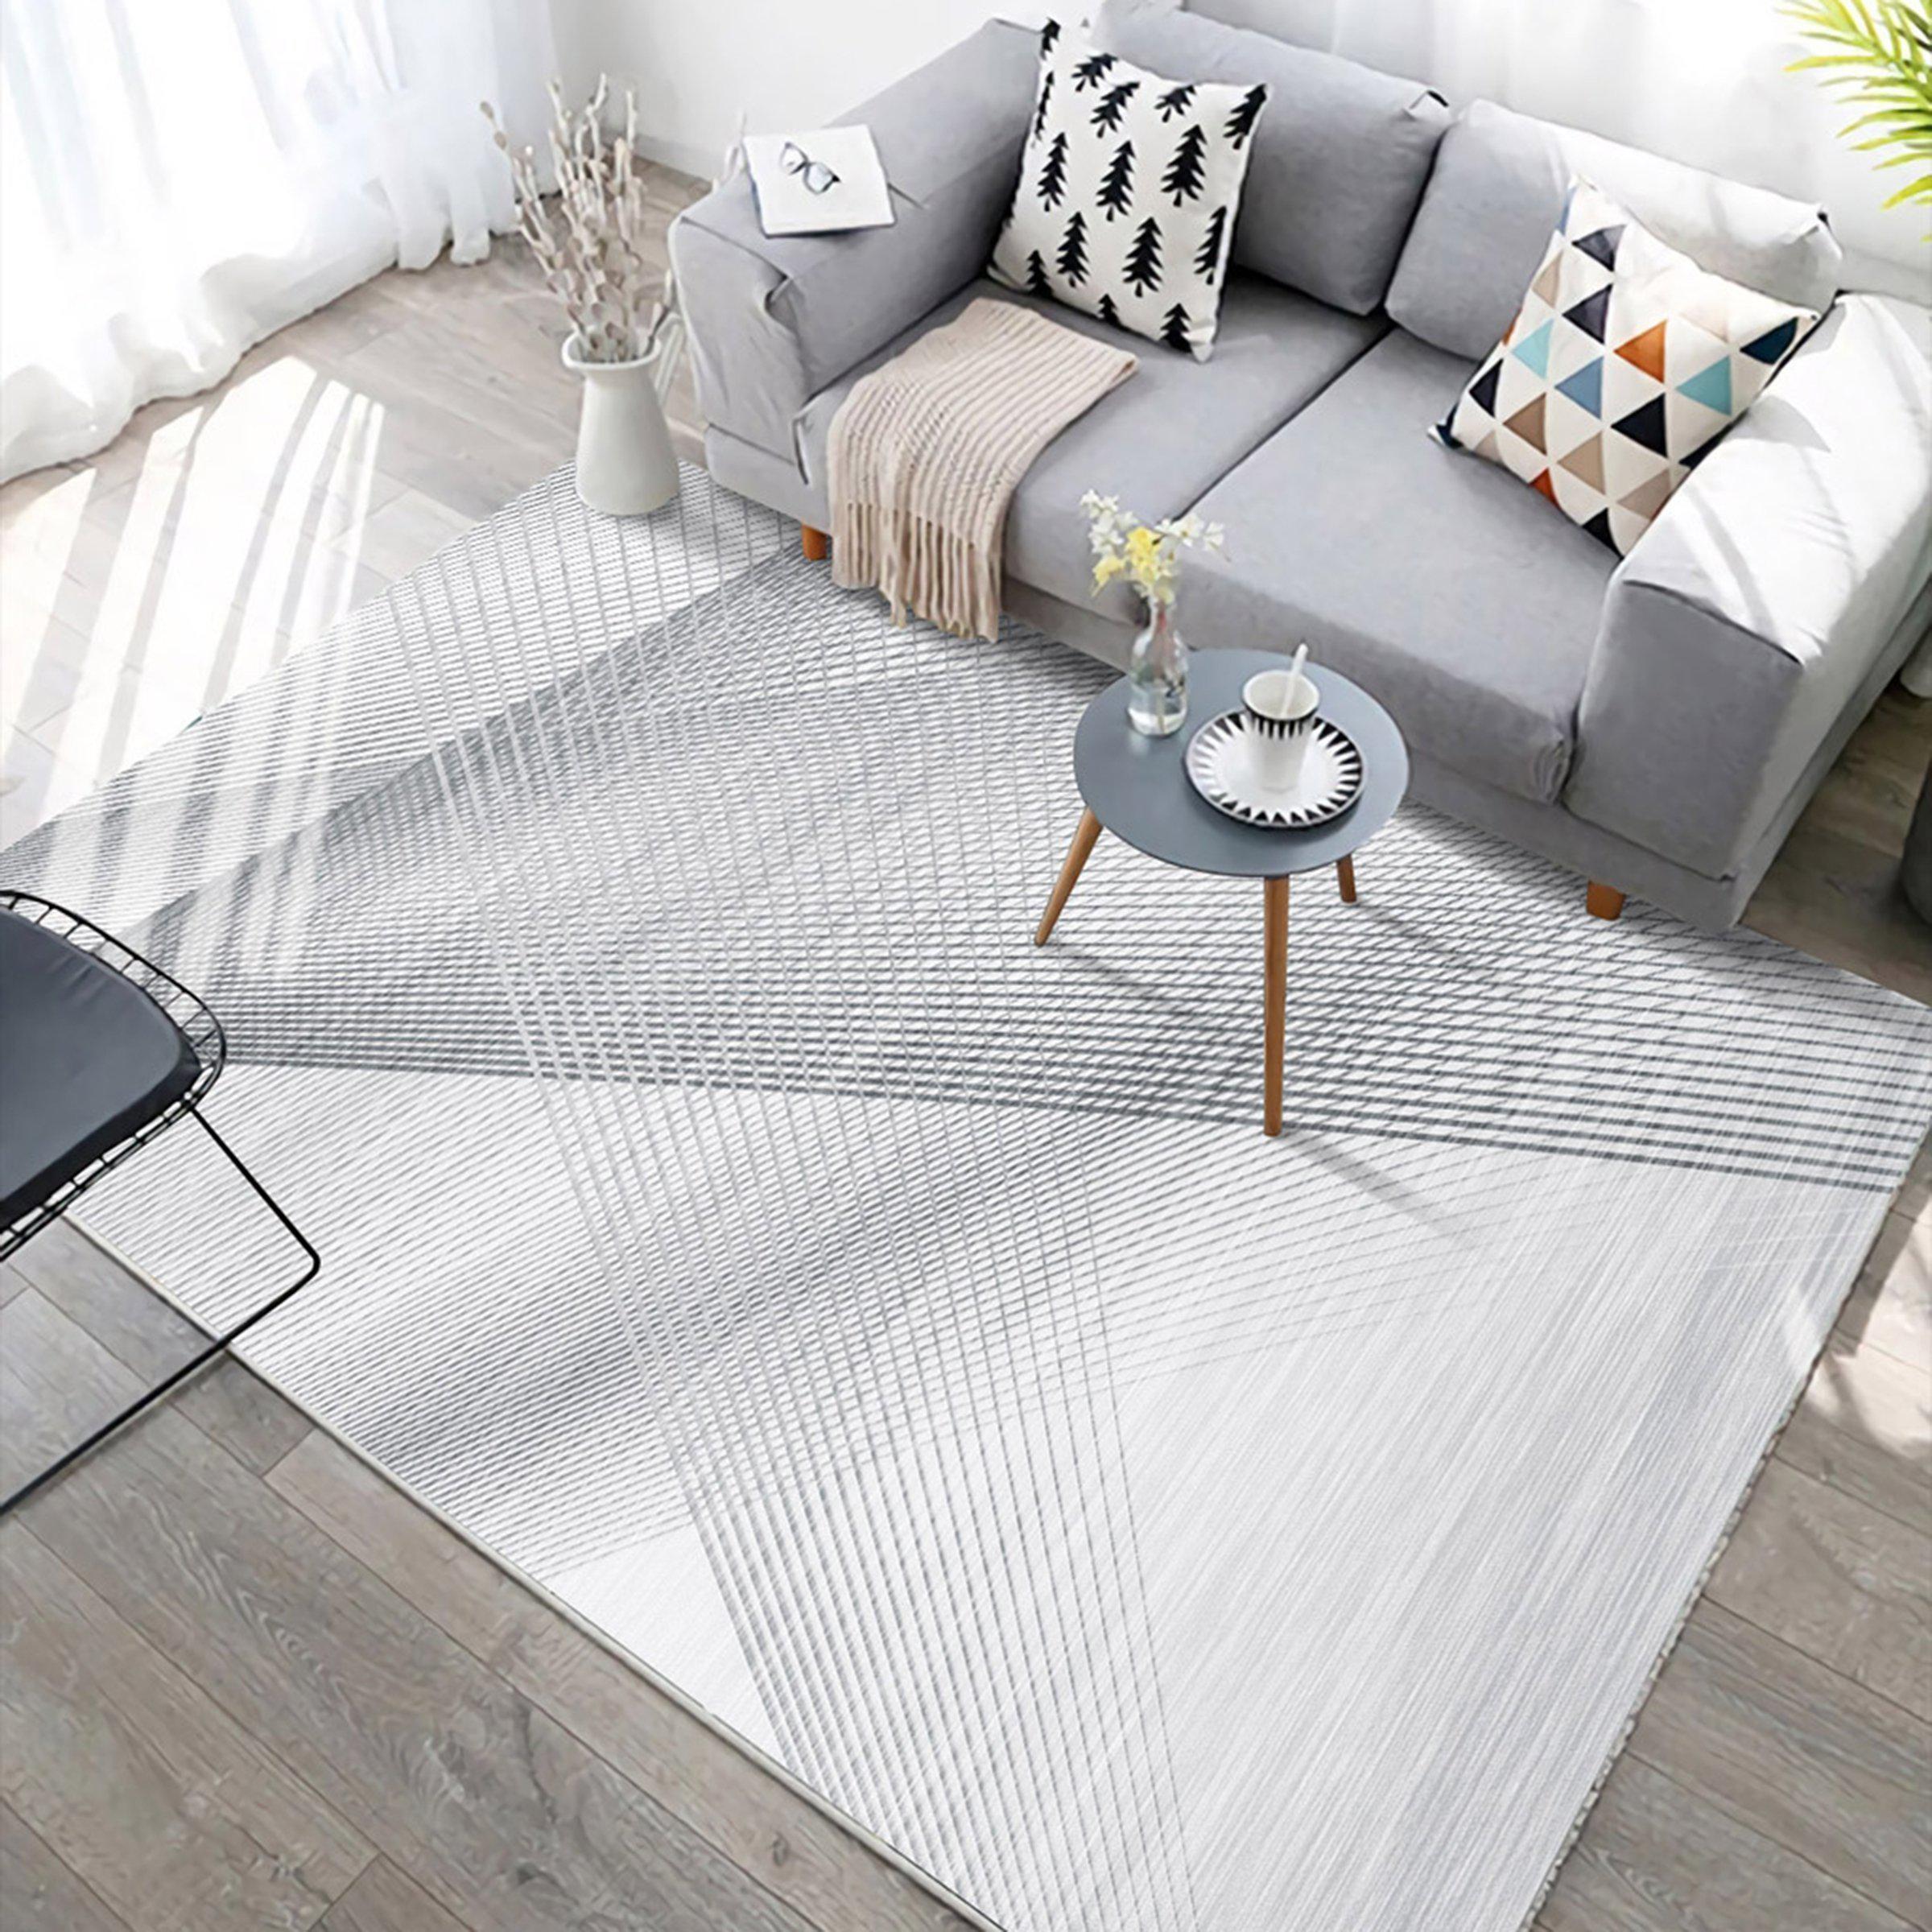 3D Home Carpet Gray Stripe WG300 Non Slip Rug Mat, 120cmx180cm (47.2"x70.9")